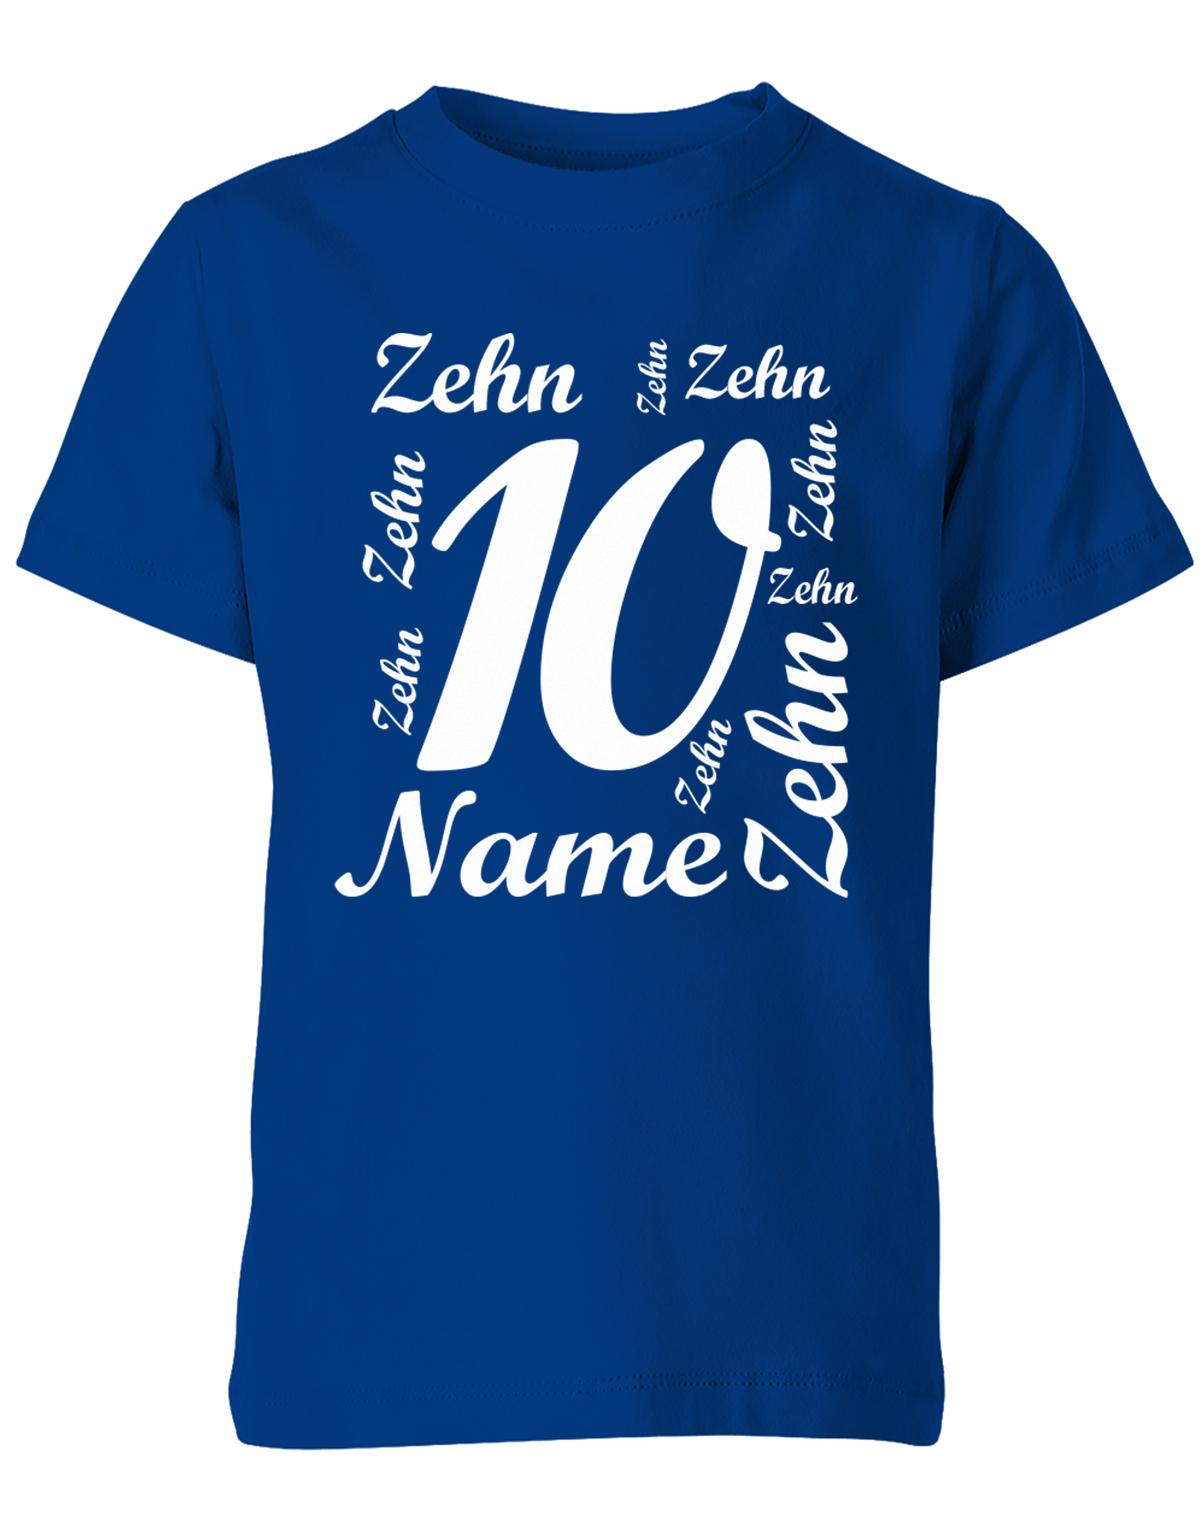 ich-bin-10-viele-zehnen-mit-name-geburtstag-kinder-shirt-royalblau